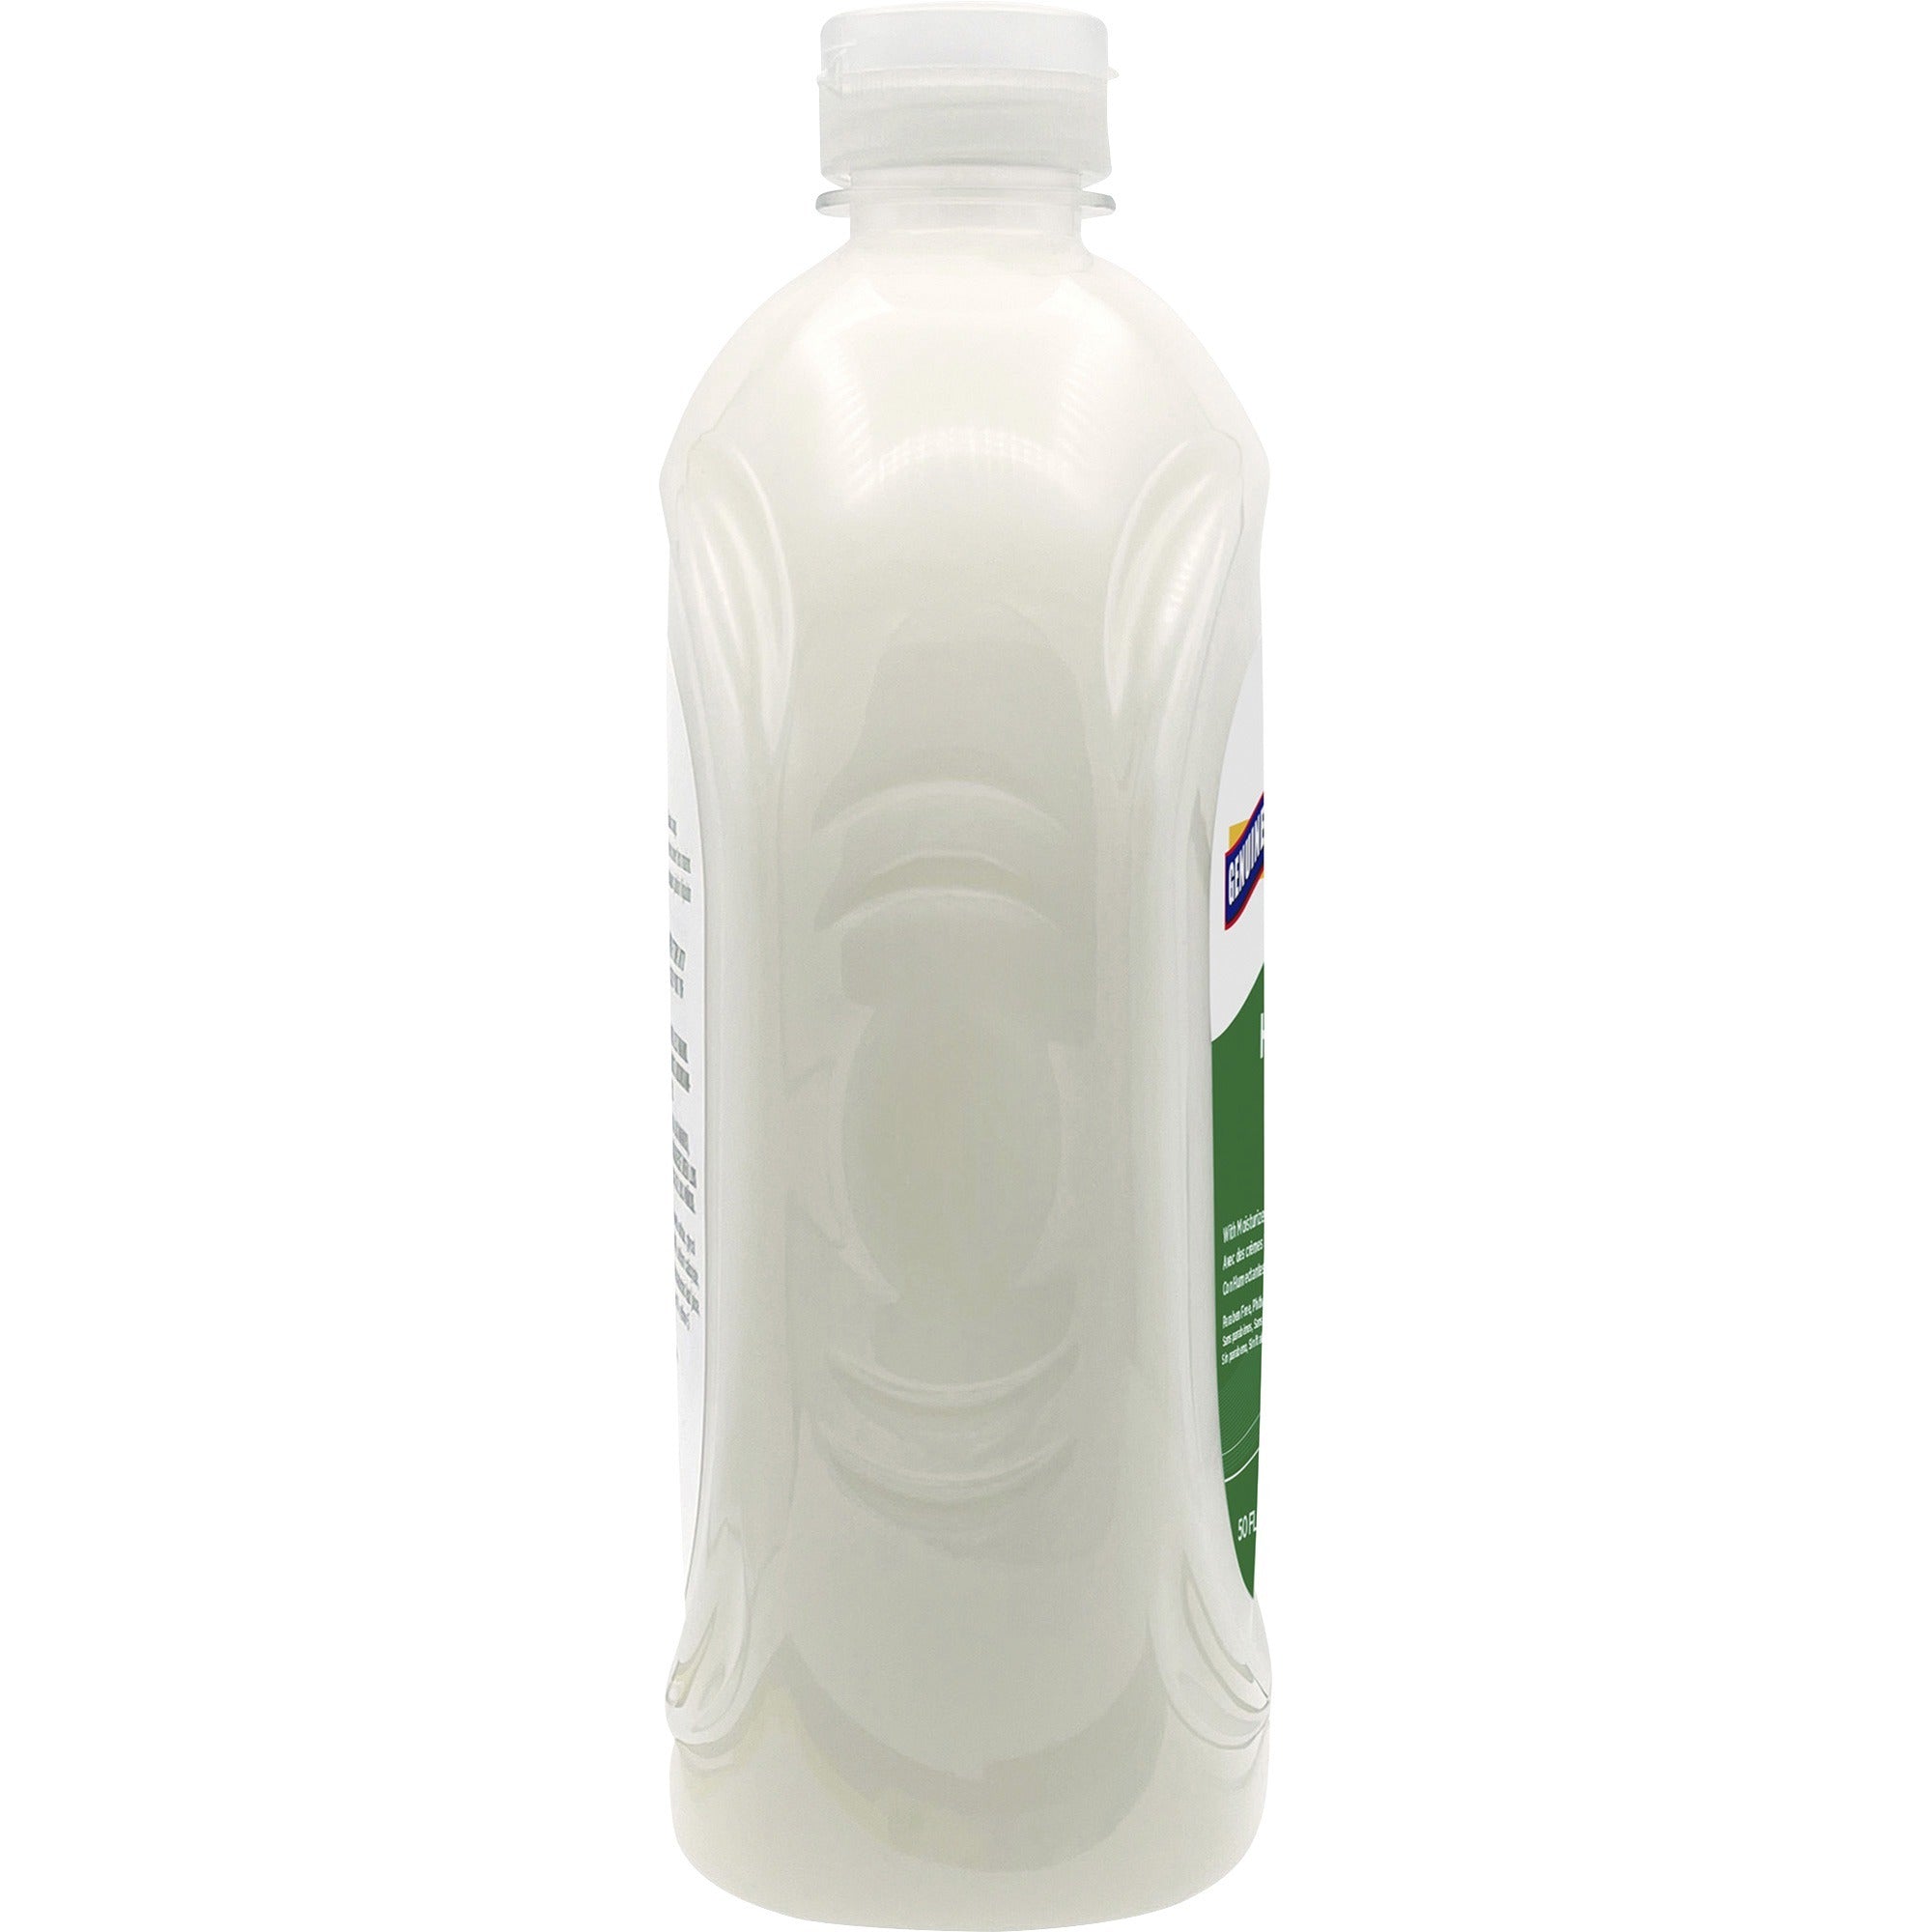 genuine-joe-lotion-soap-50-fl-oz-14787-ml-bottle-dispenser-hand-skin-white-anti-irritant-1-each_gjo18420 - 4